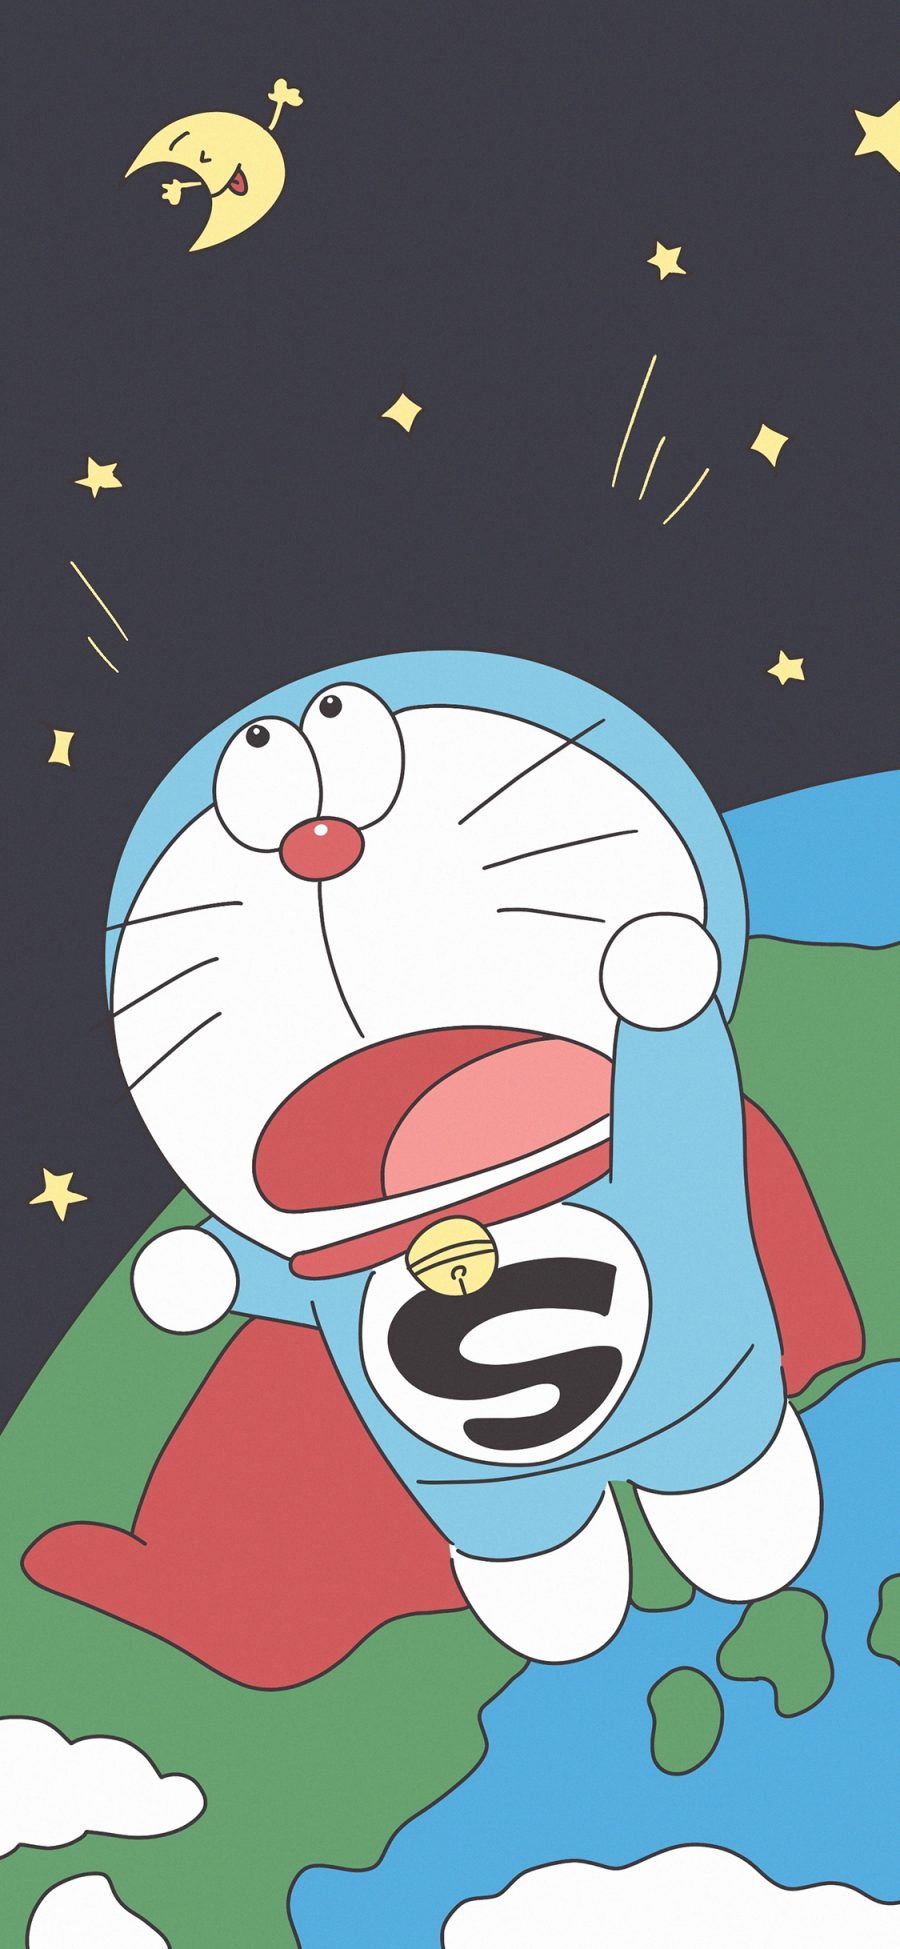 [2436×1125]哆啦A梦 叮当猫 日本 动画 太空 苹果手机动漫壁纸图片